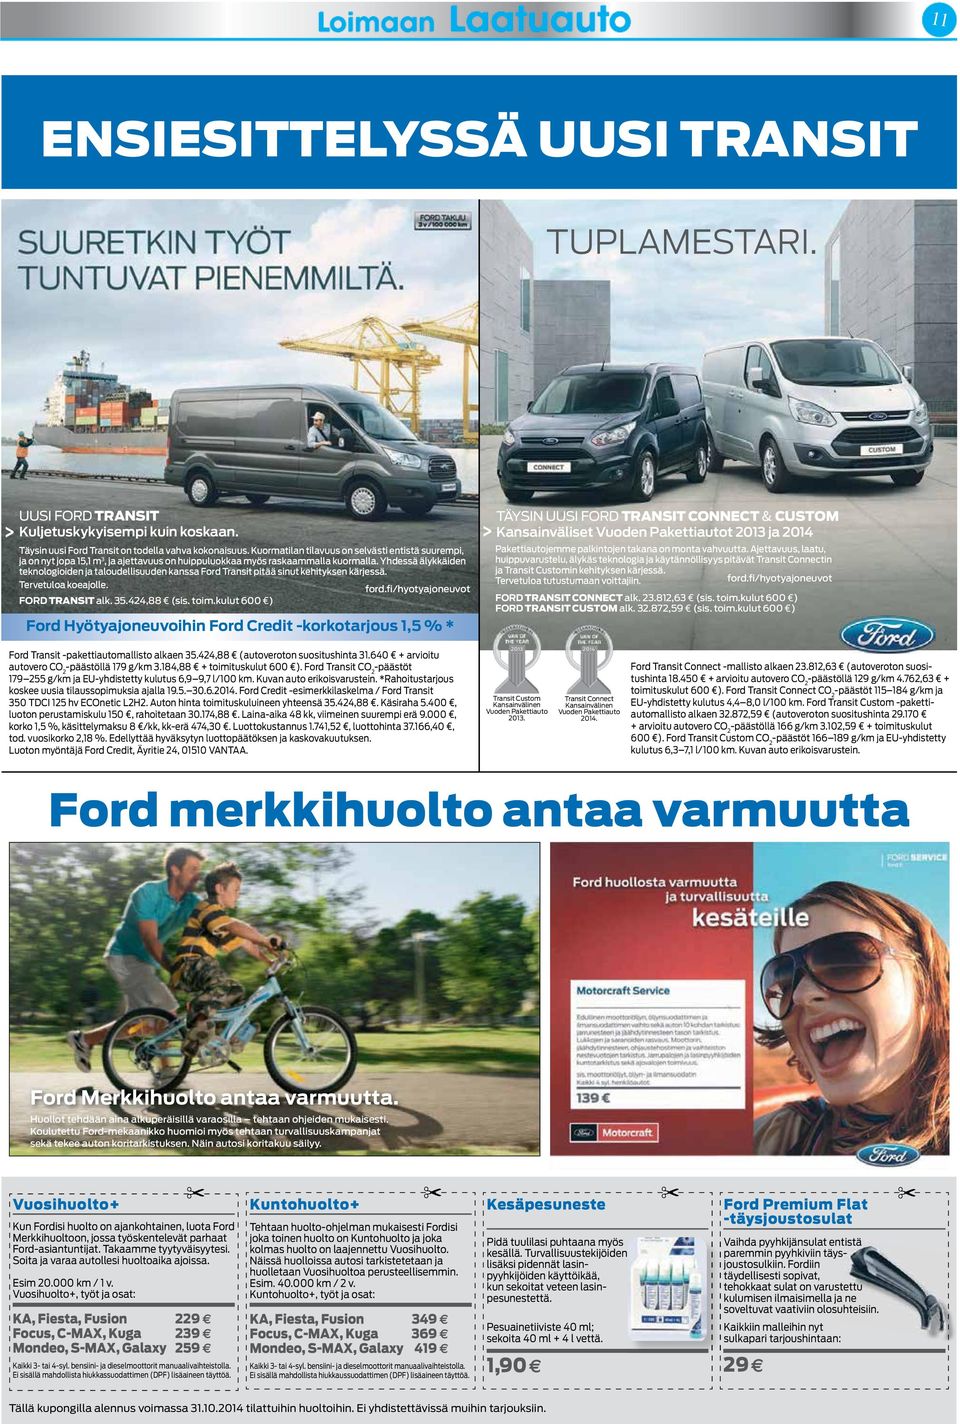 Yhdessä älykkäiden teknologioiden ja taloudellisuuden kanssa Ford Transit pitää sinut kehityksen kärjessä. Tervetuloa koeajolle. ford.fi/hyotyajoneuvot FORD TRANSIT alk. 35.424,88 (sis. toim.